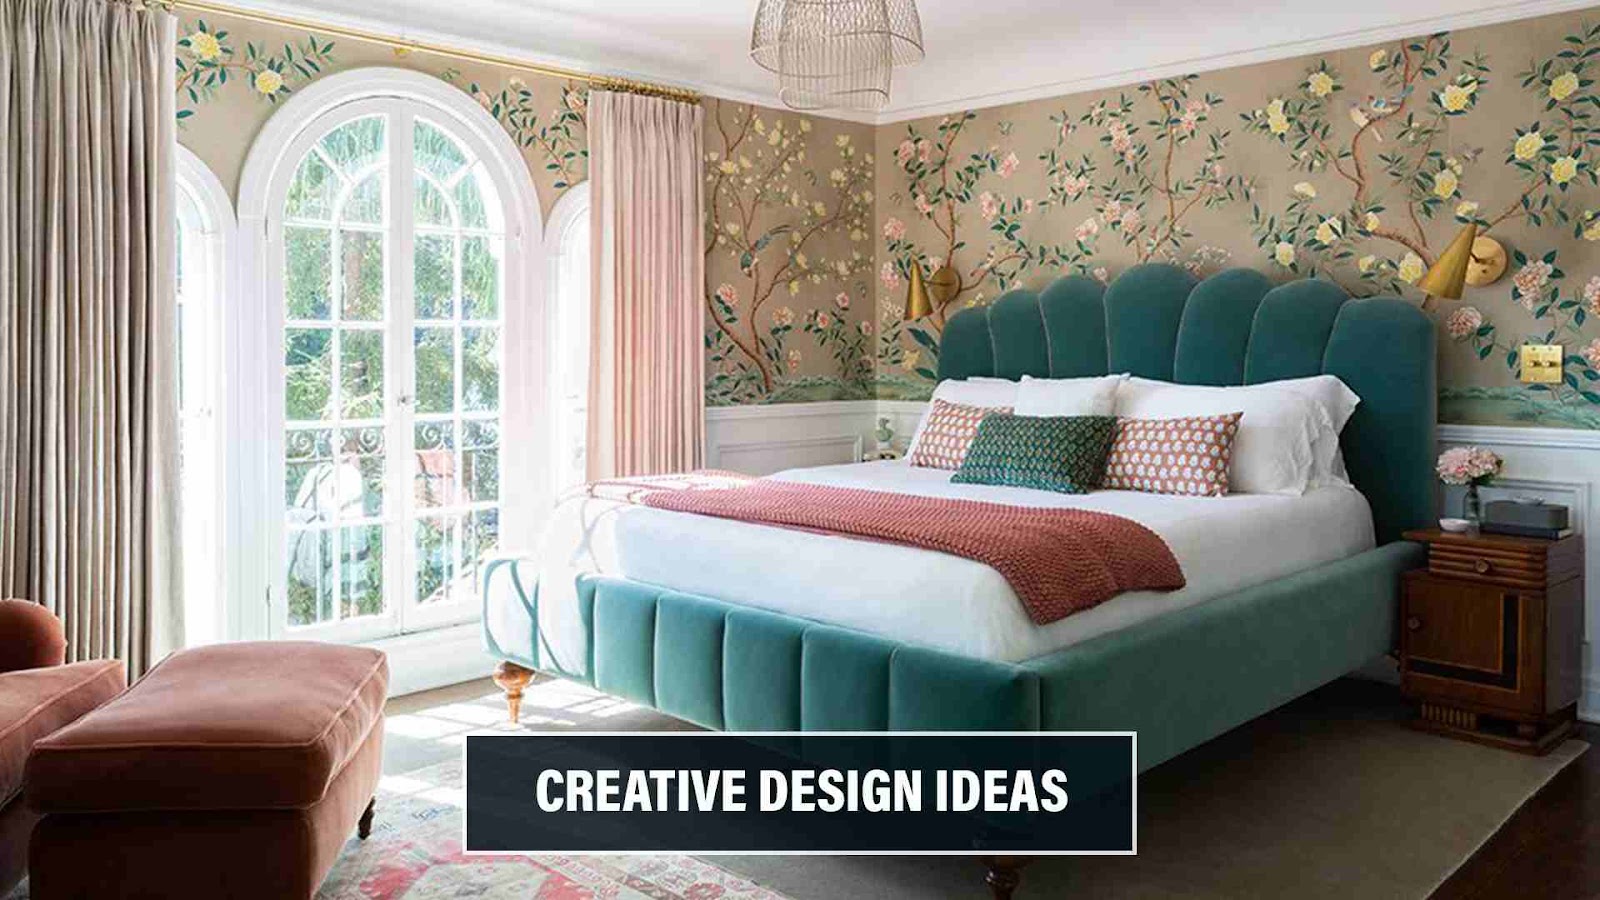 Creative Design Ideas